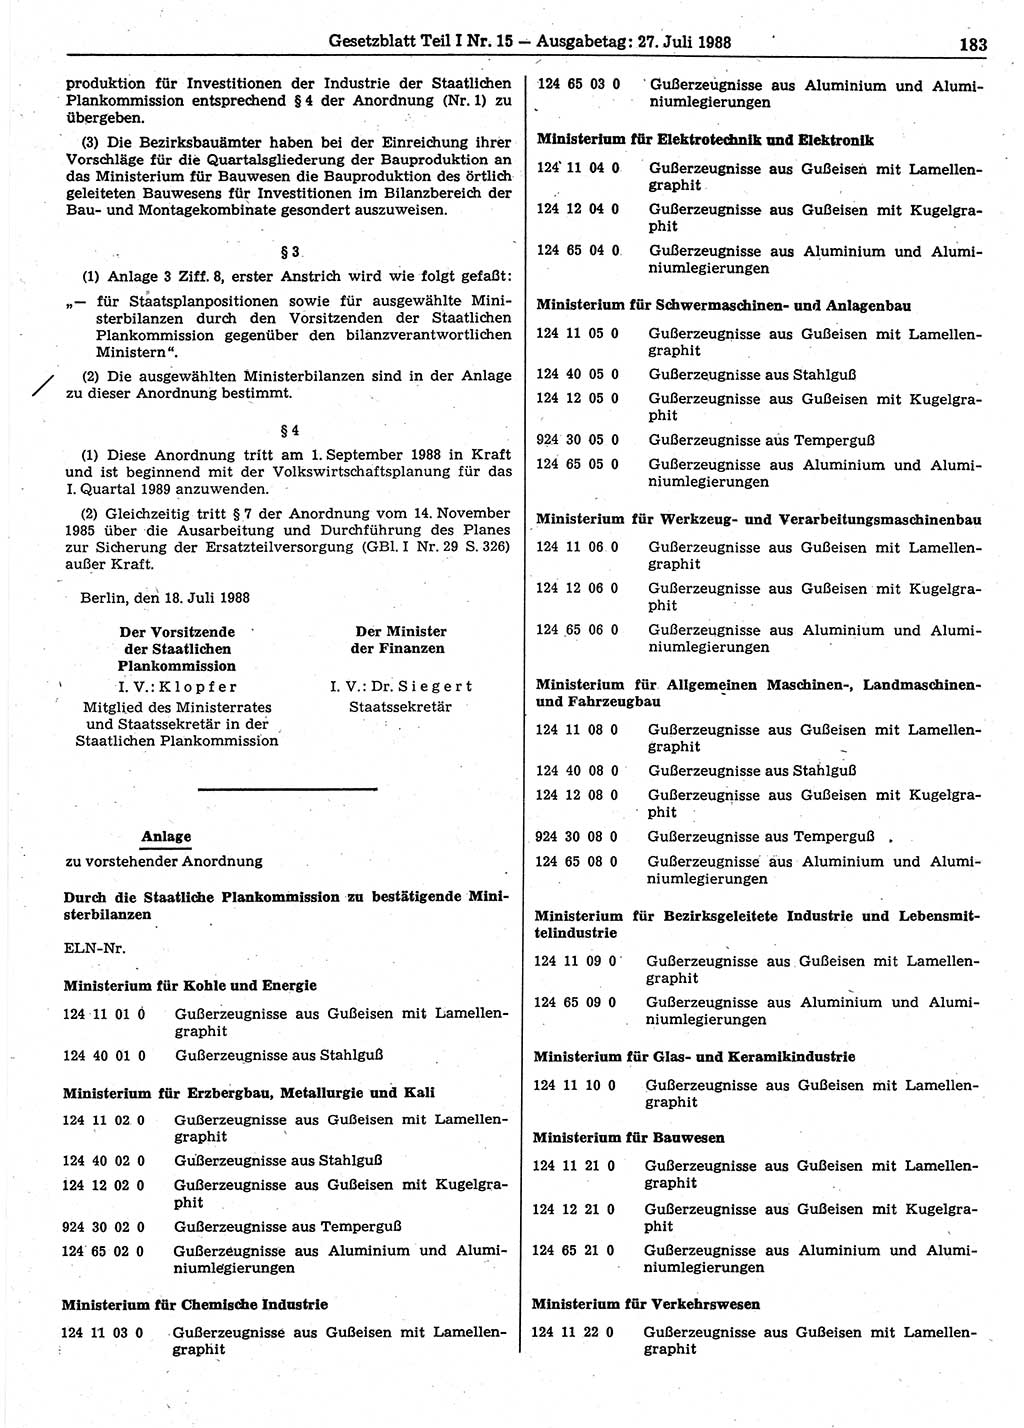 Gesetzblatt (GBl.) der Deutschen Demokratischen Republik (DDR) Teil Ⅰ 1988, Seite 183 (GBl. DDR Ⅰ 1988, S. 183)